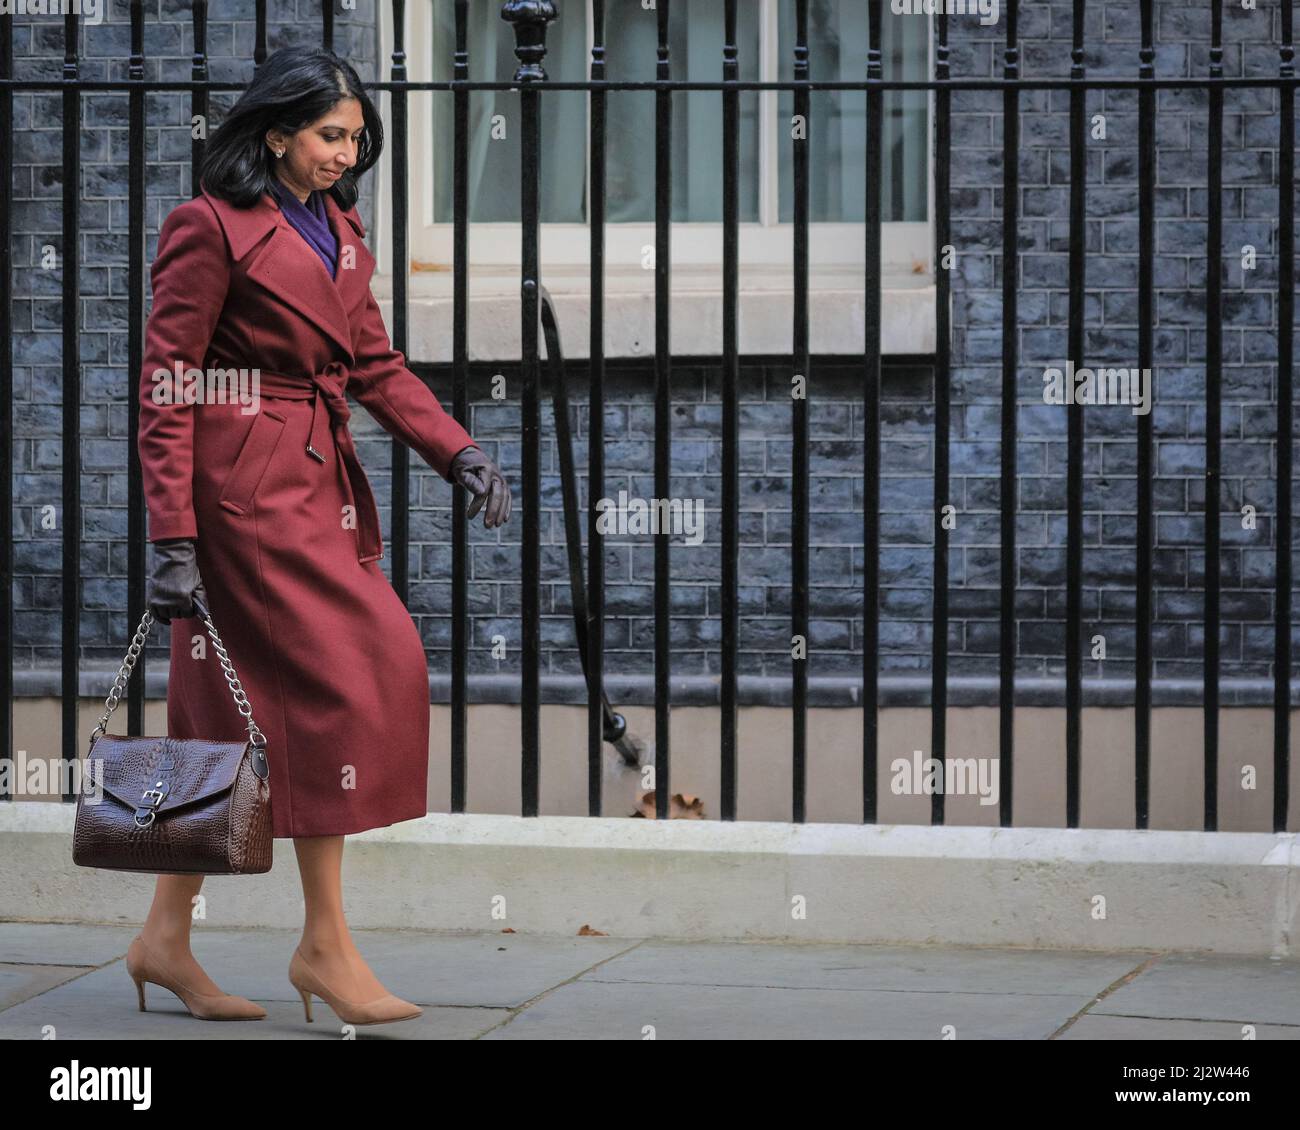 Suella Braverman, Generalanwältin, Politikerin der britischen Konservativen Partei, Downing Street, London, Großbritannien Stockfoto